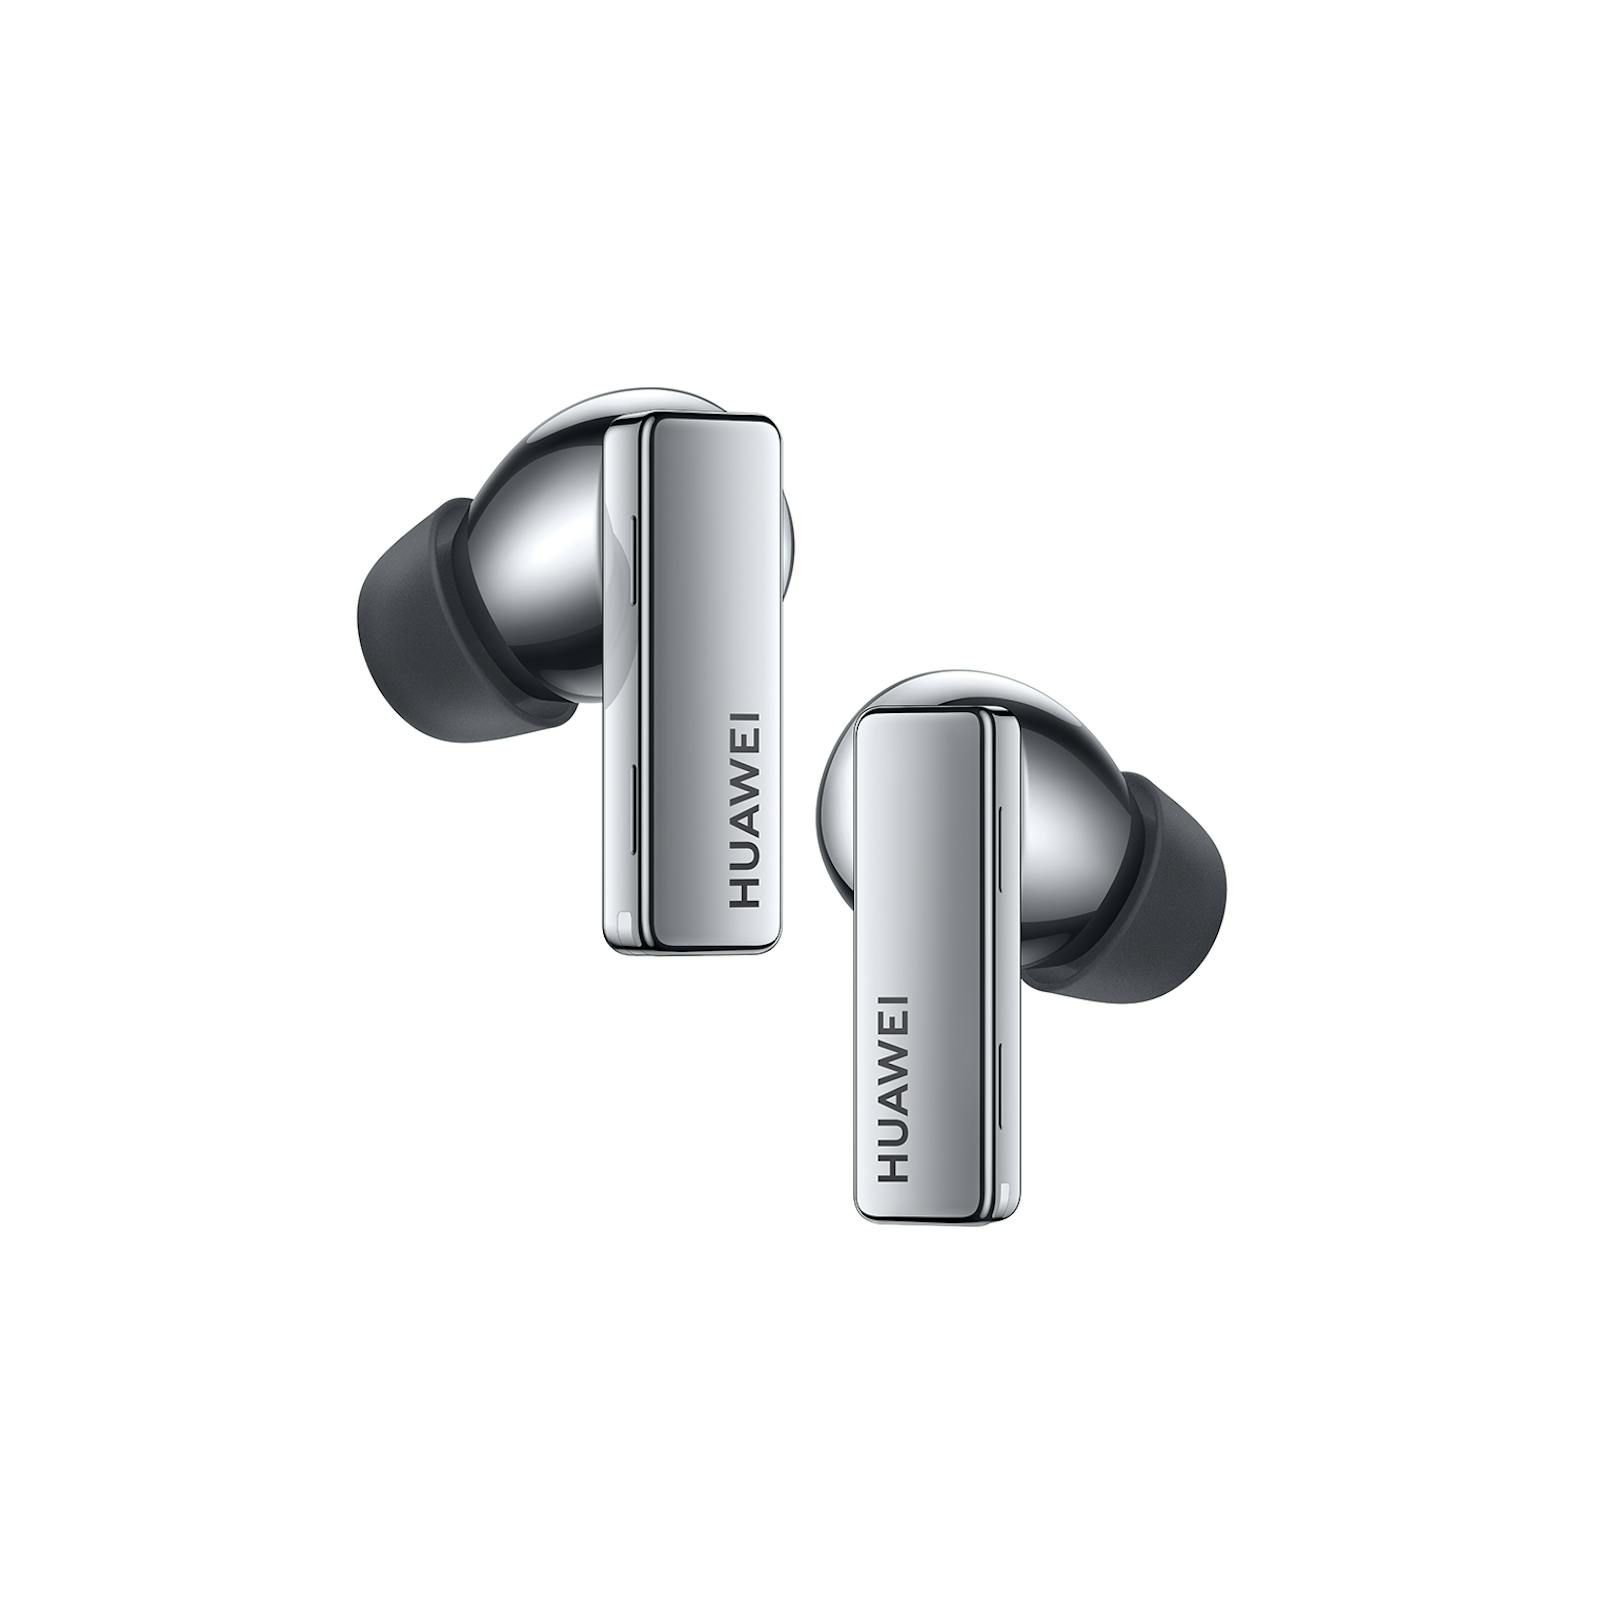 Insgesamt versprechen die neuen In-Ear-Kopfhörer von Huawei im mitgelieferten Case insgesamt 30 Stunden Hörvergnügen.